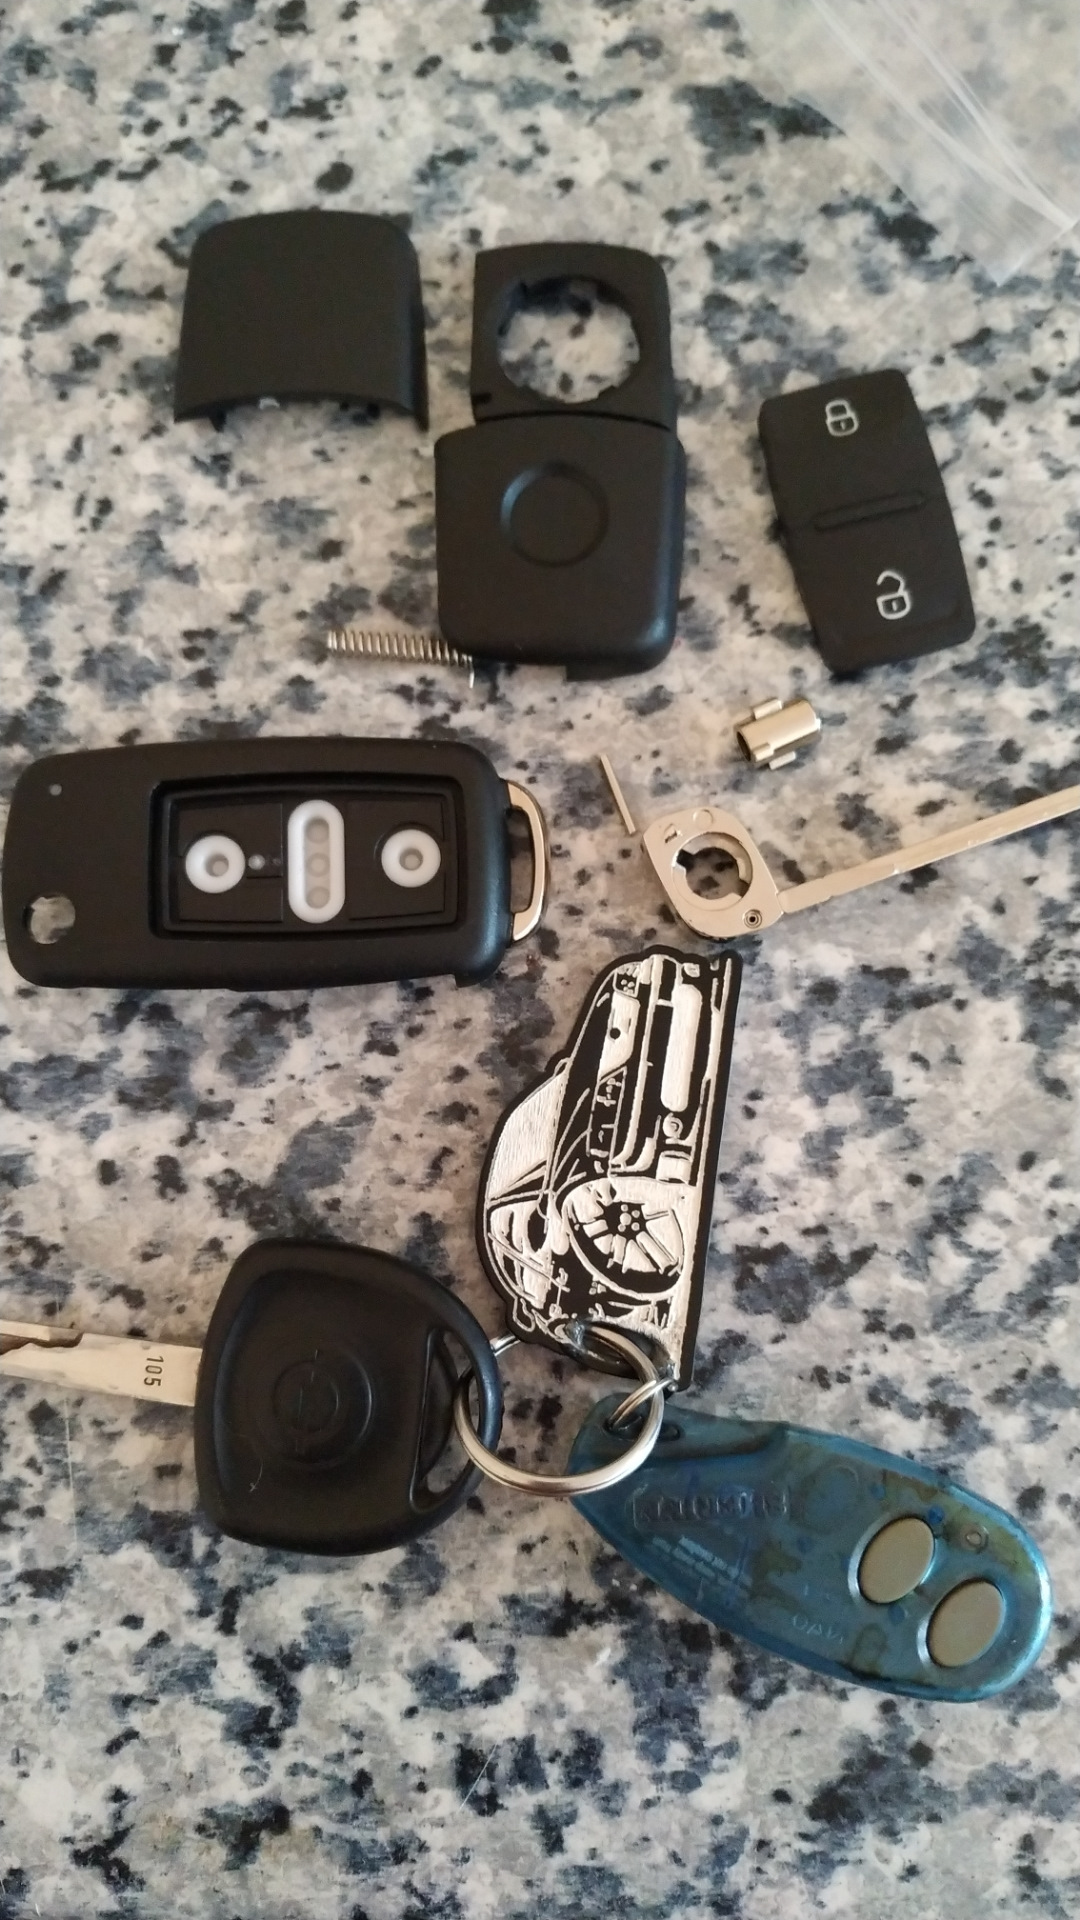 Ключ вектра б. Ключ зажигания Вектра б выкидной. Ключи Opel Vectra b 1996. Opel Vectra a ключ. Выкидной ключ на три кнопки Вектра с.